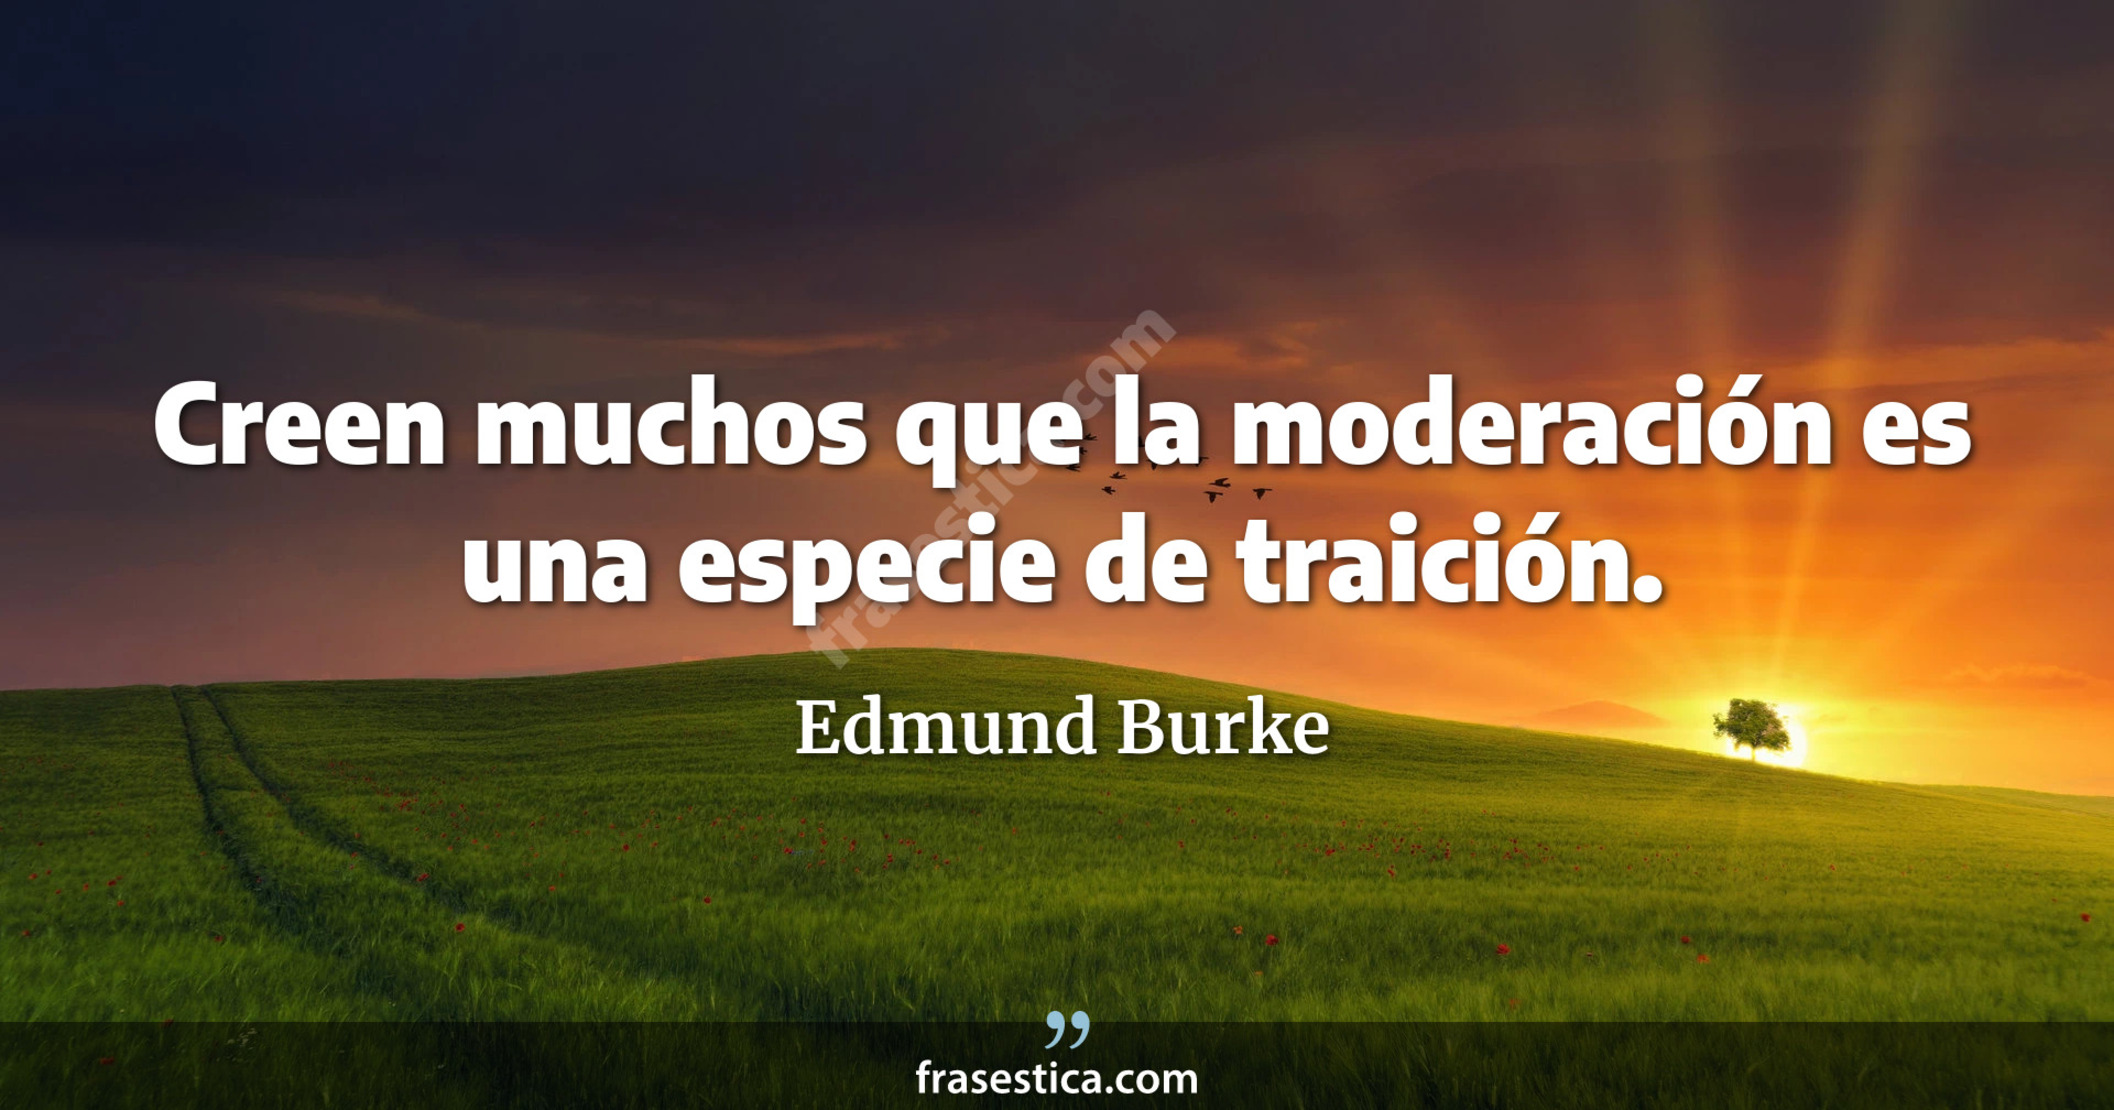 Creen muchos que la moderación es una especie de traición. - Edmund Burke